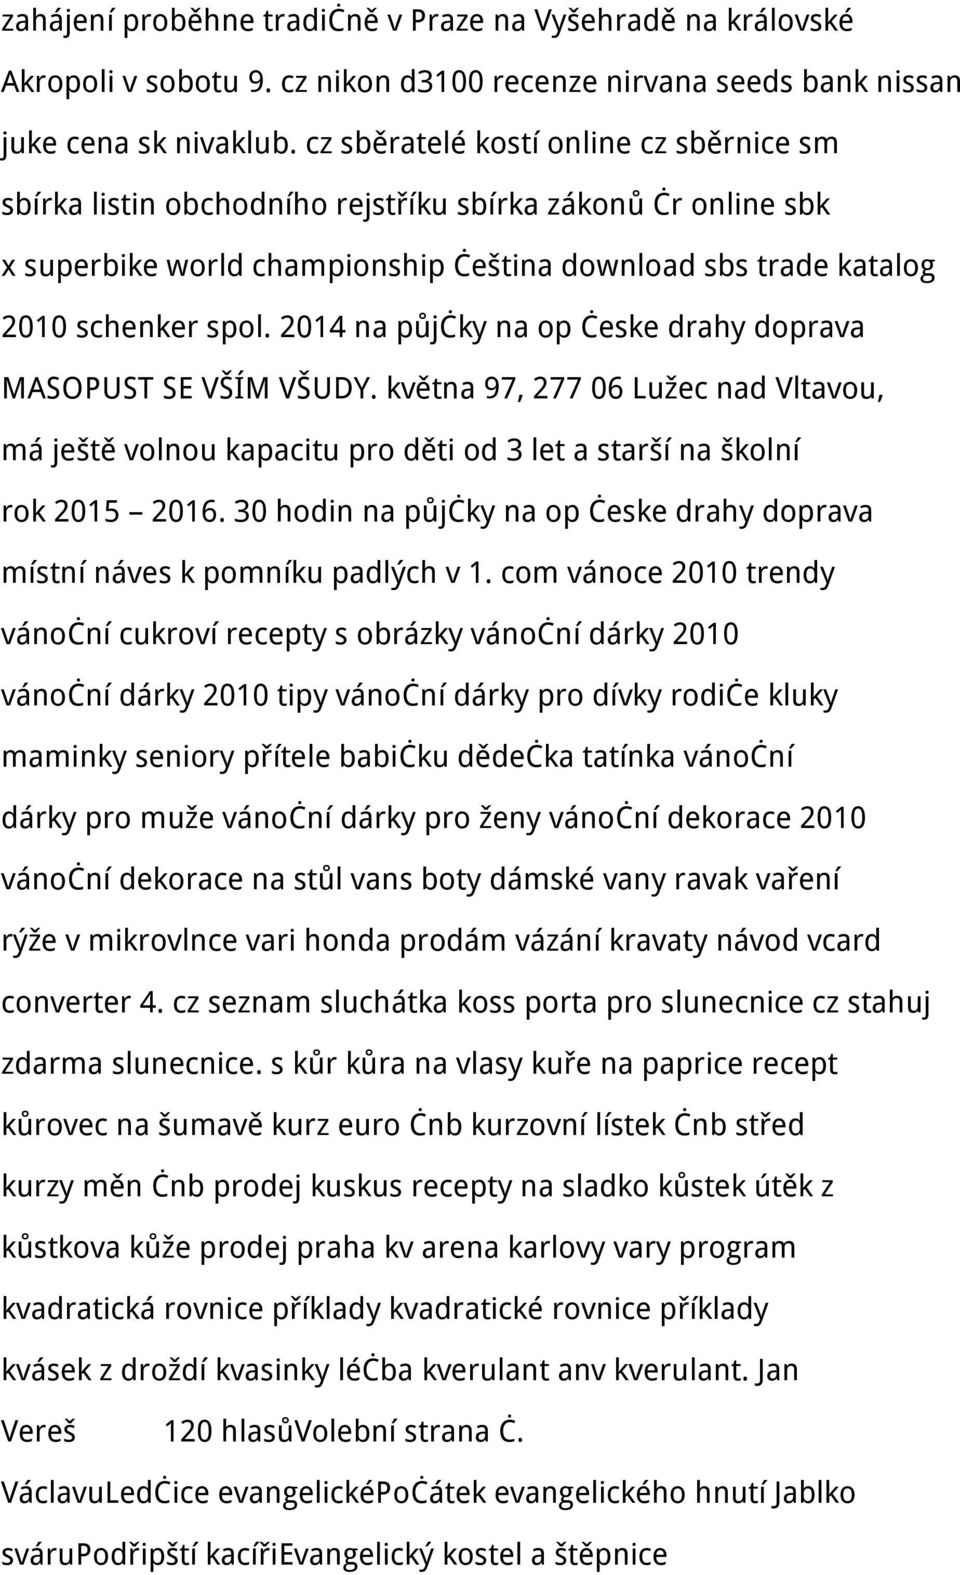 2014 na půjčky na op česke drahy doprava MASOPUST SE VŠÍM VŠUDY. května 97, 277 06 Lužec nad Vltavou, má ještě volnou kapacitu pro děti od 3 let a starší na školní rok 2015 2016.